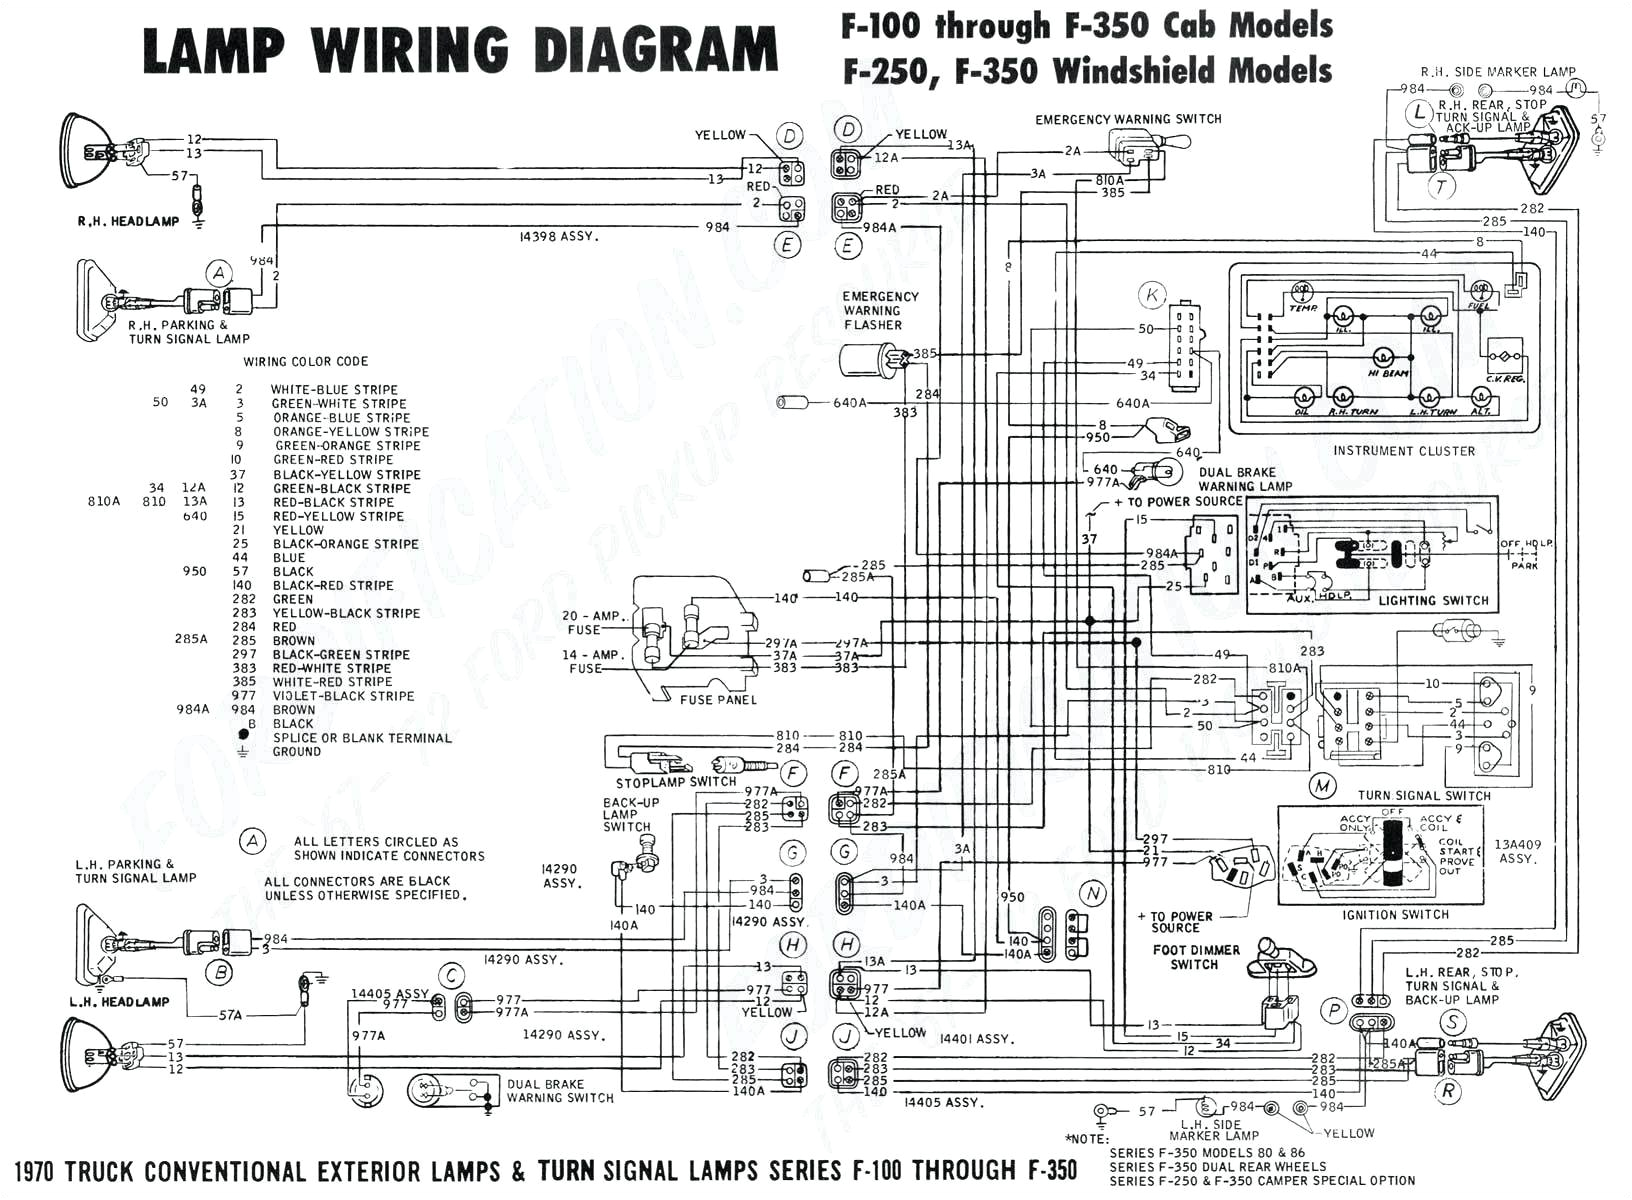 volvo wg64 wiring diagram wiring diagram blog volvo l20f wiring diagrams wiring diagram blog volvo wg64